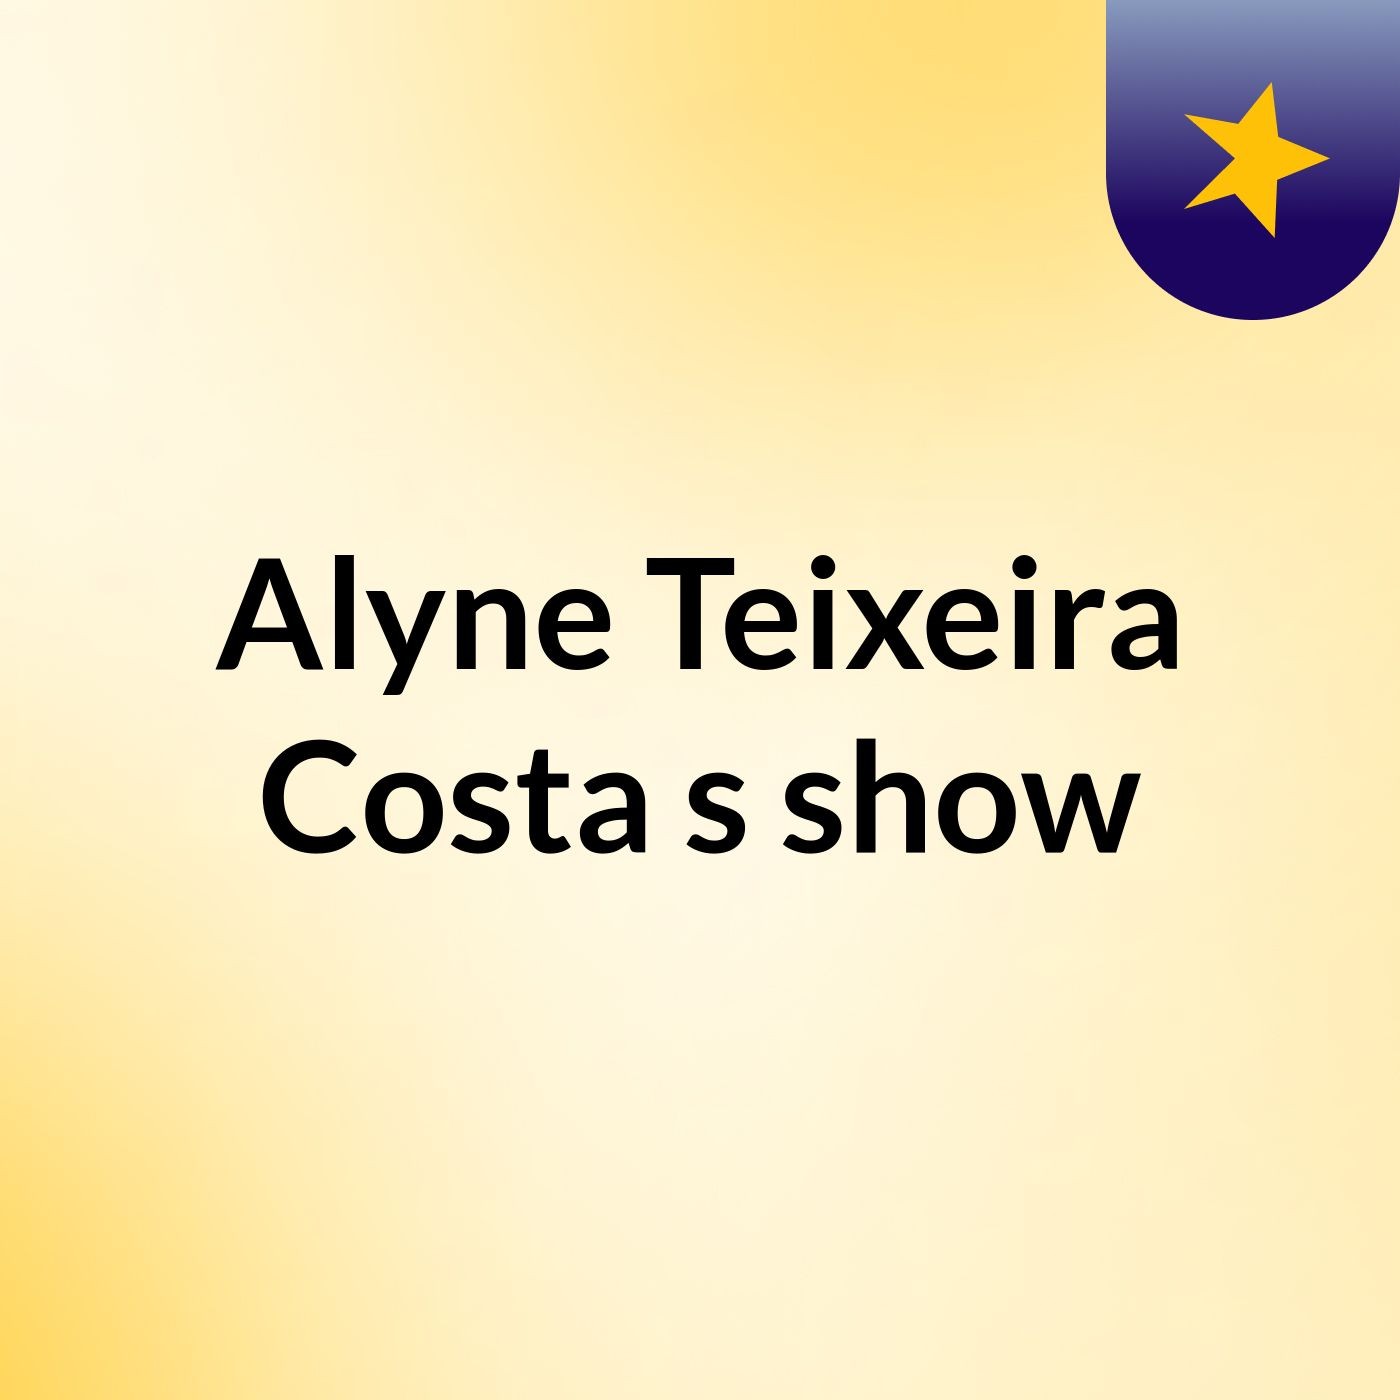 Alyne Teixeira Costa's show